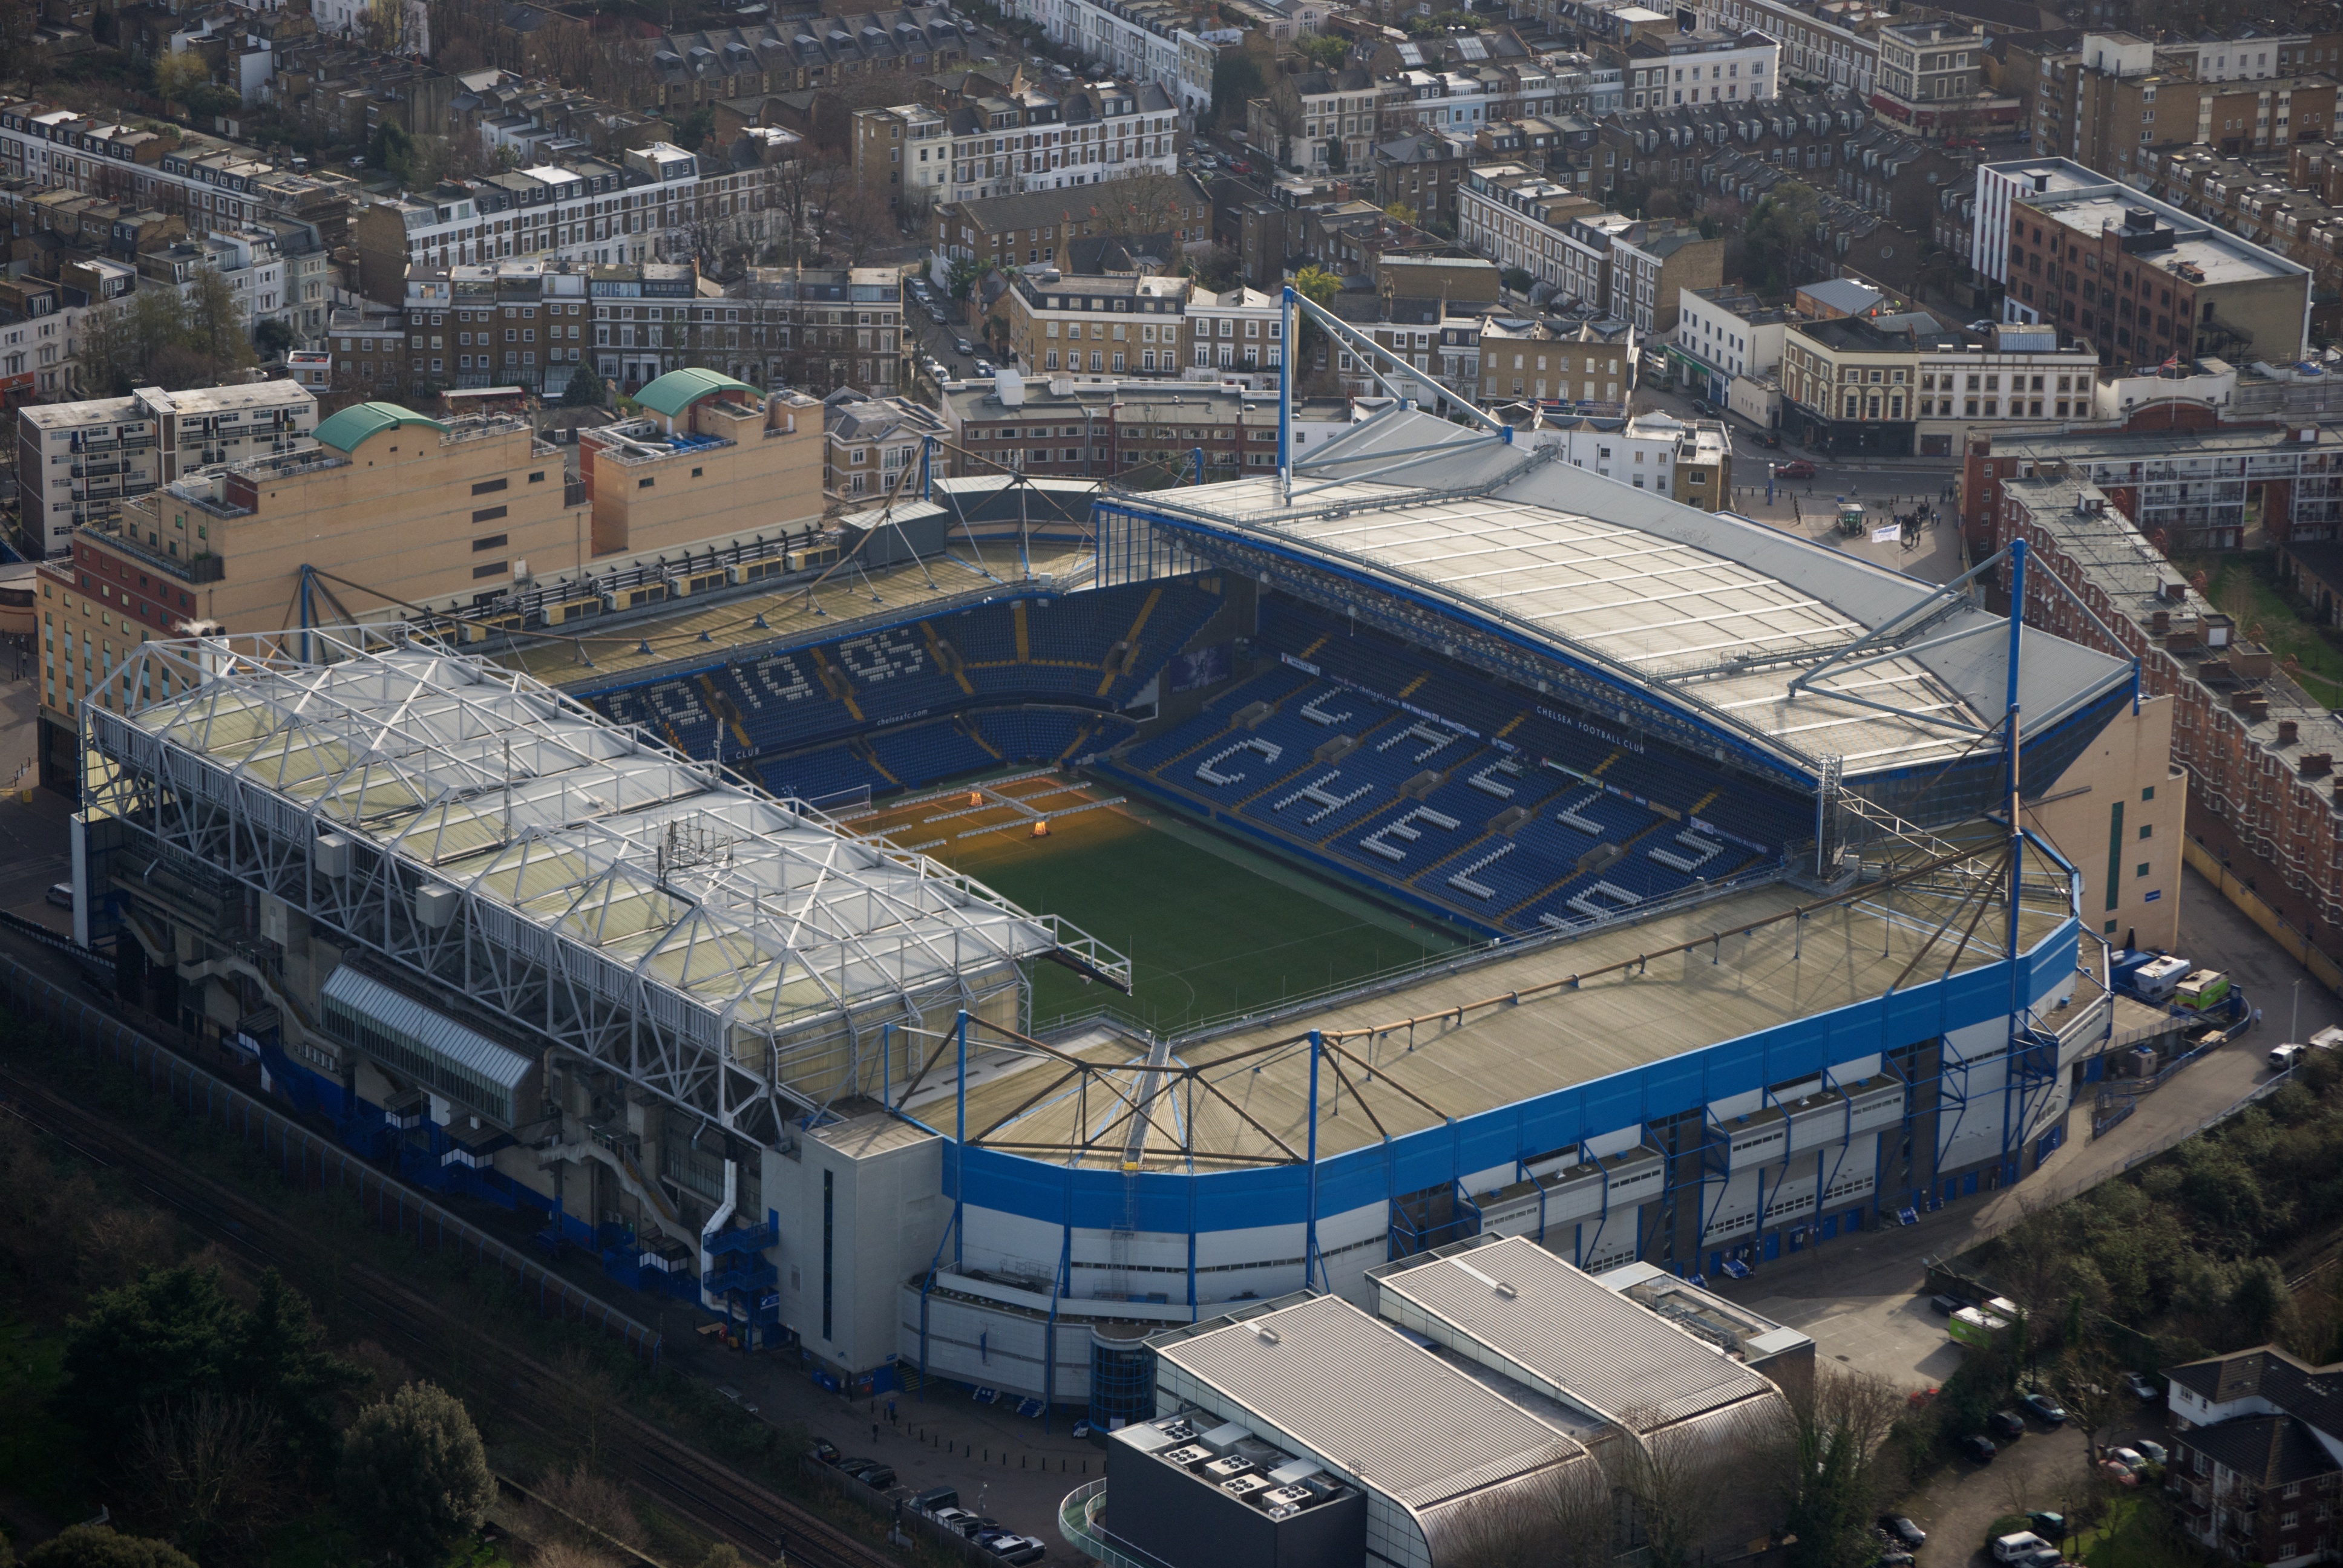 Stamford Bridge (stadium) - Wikipedia